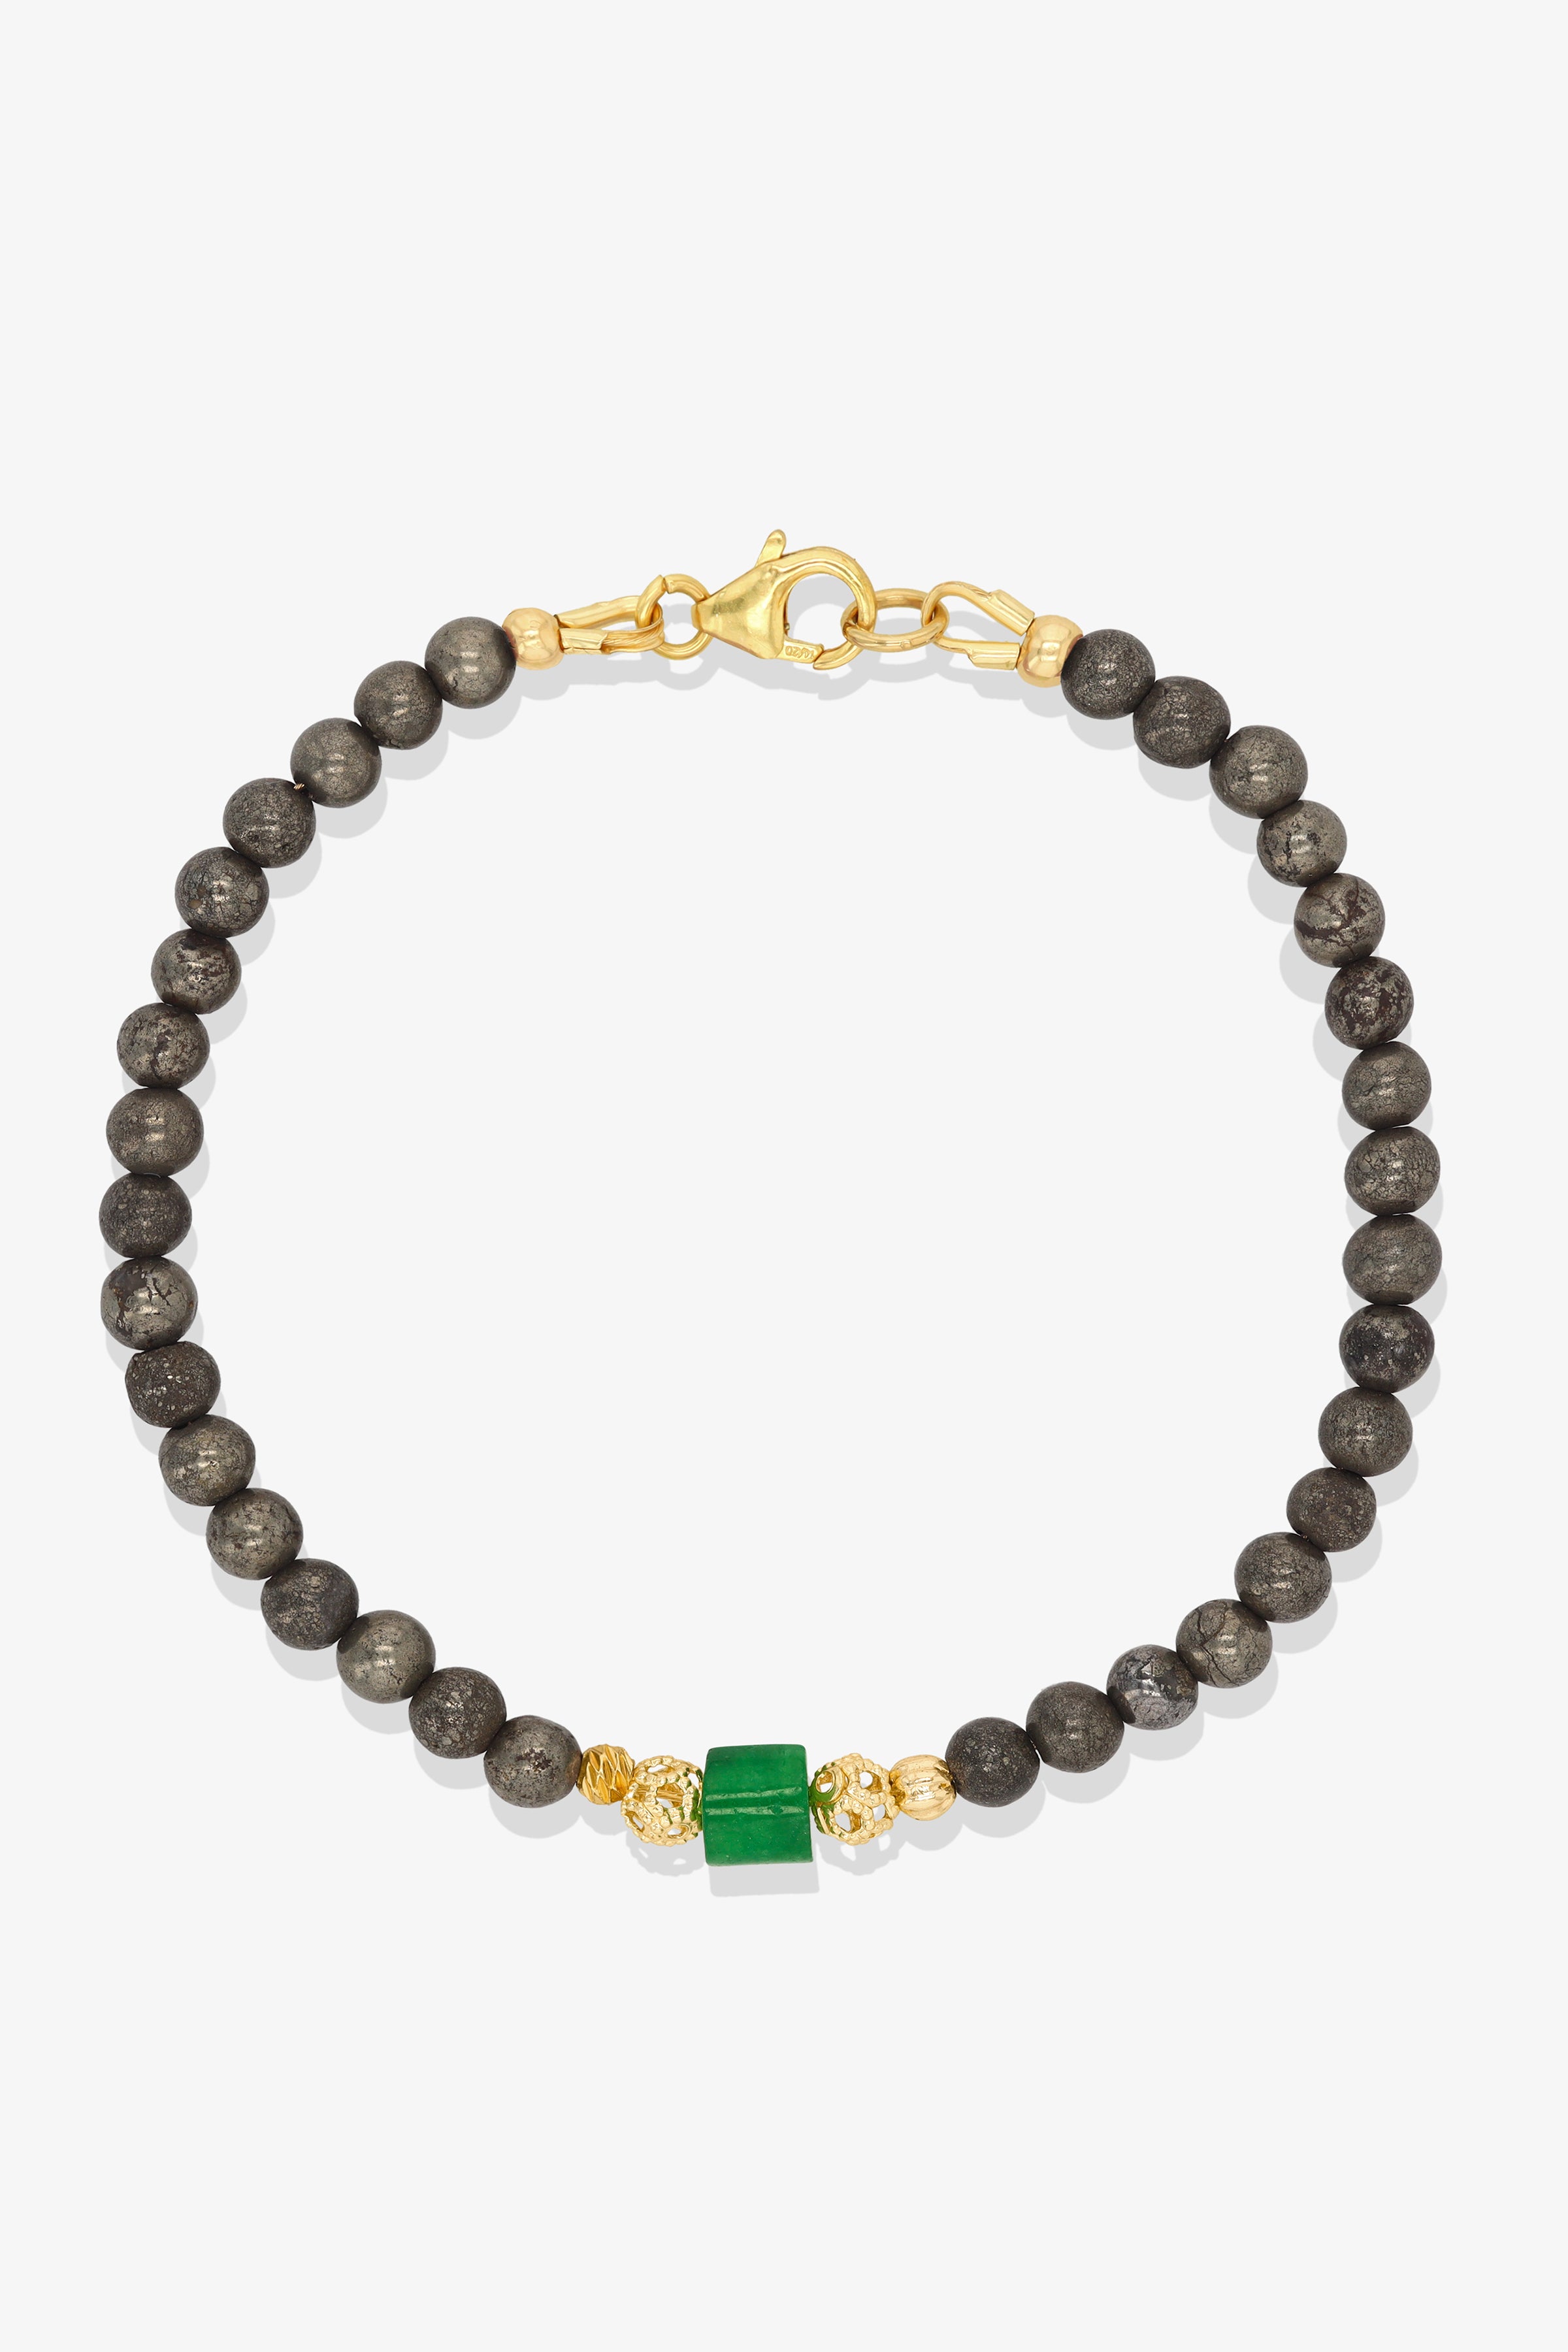 Morganite and Jade Gold Vermeil Crystal Bracelet - Wealth